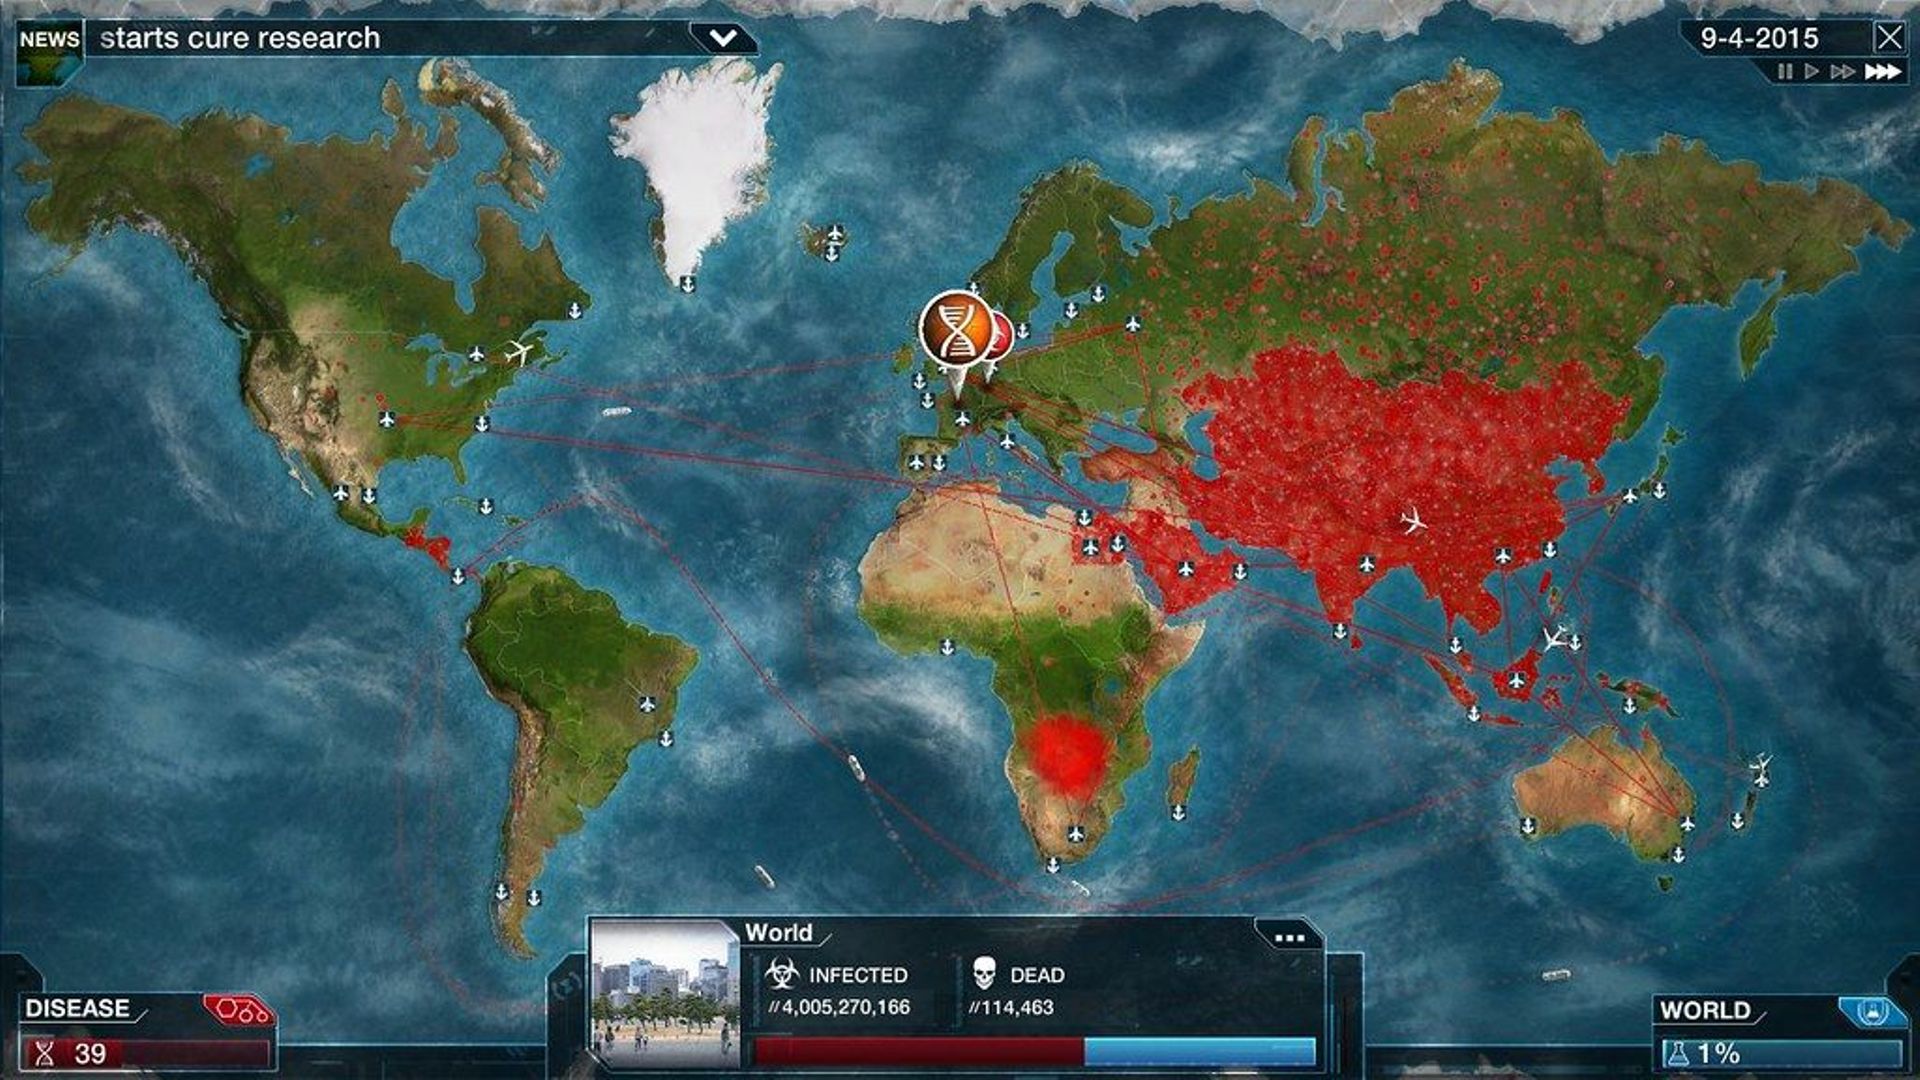 Le jeu "Plague Inc" revendique 130 millions de joueurs dans le monde.